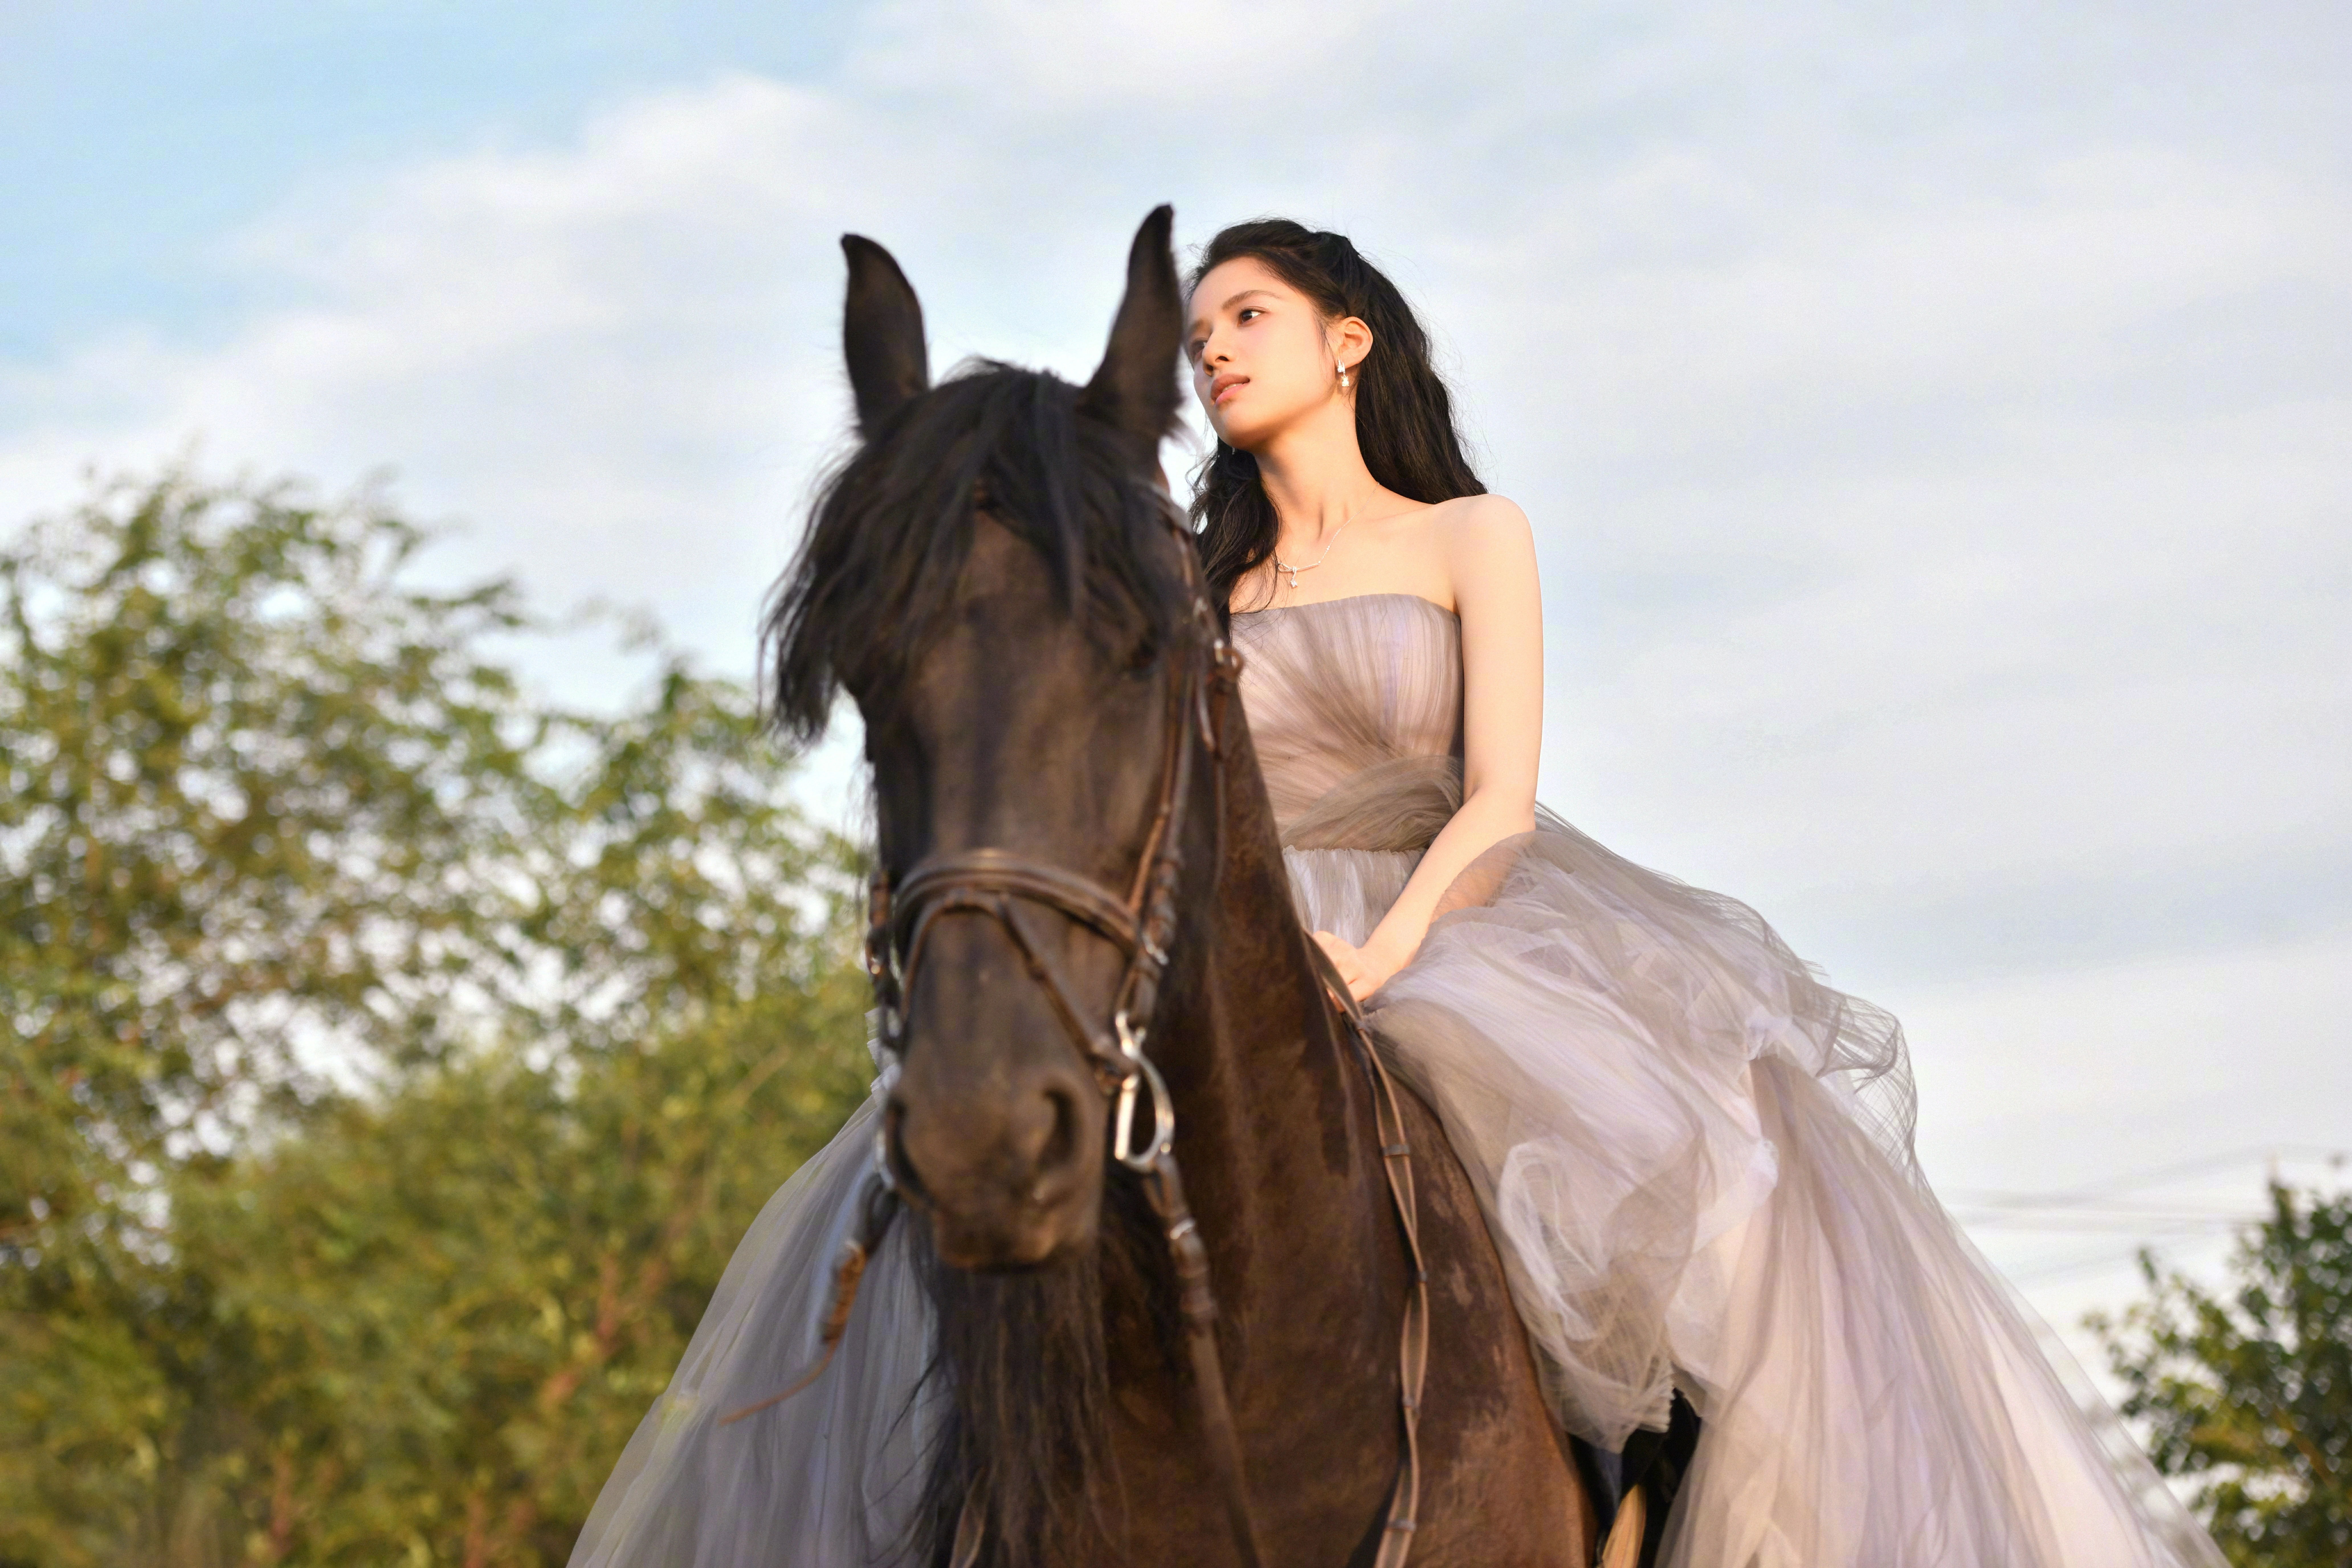 张婧仪穿蓝色公主裙显高贵气质 骑马姿势优雅侧颜迷人,12